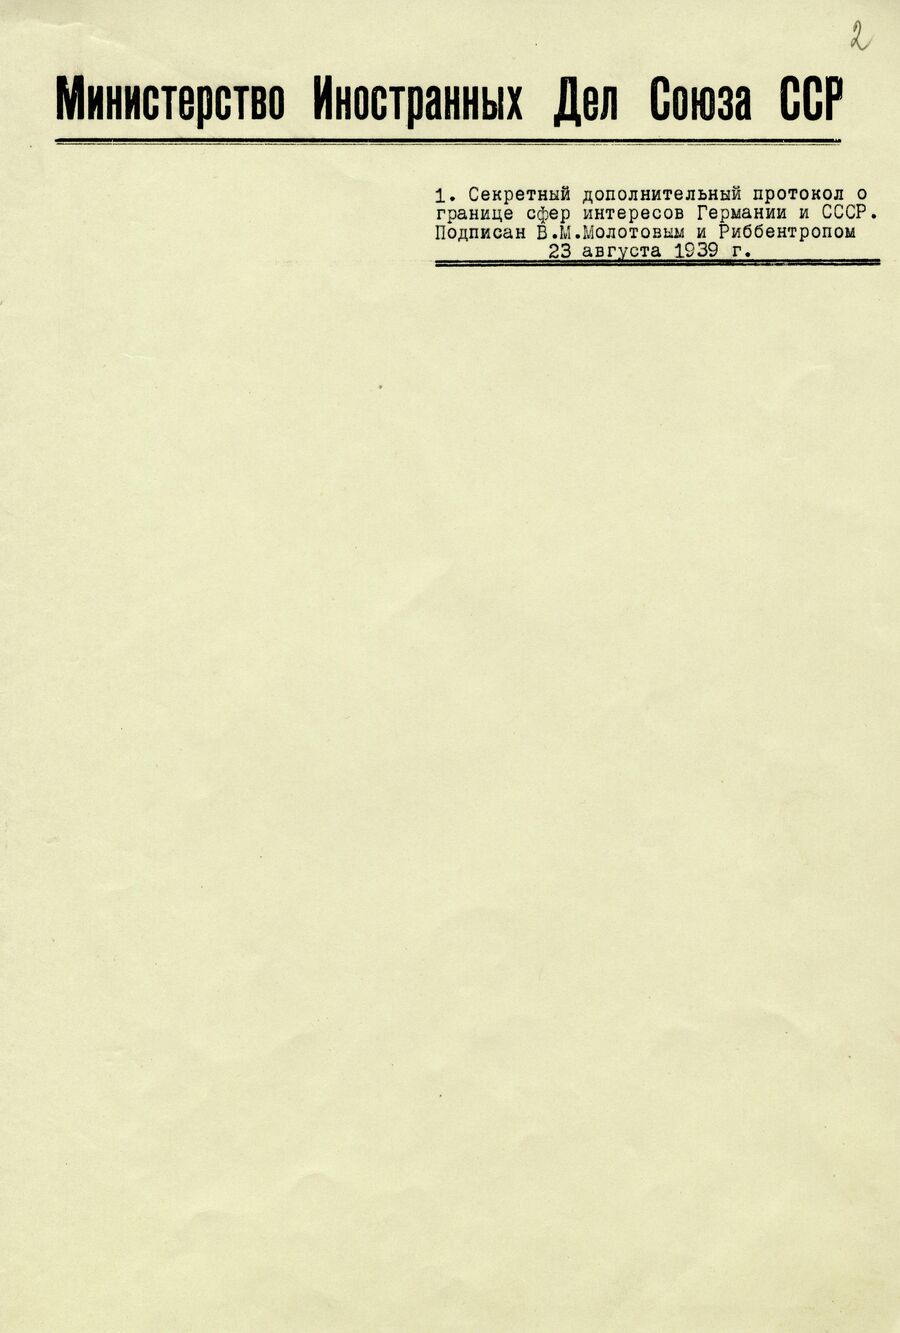 1939.08.23 Секретный протокол. Лист 2